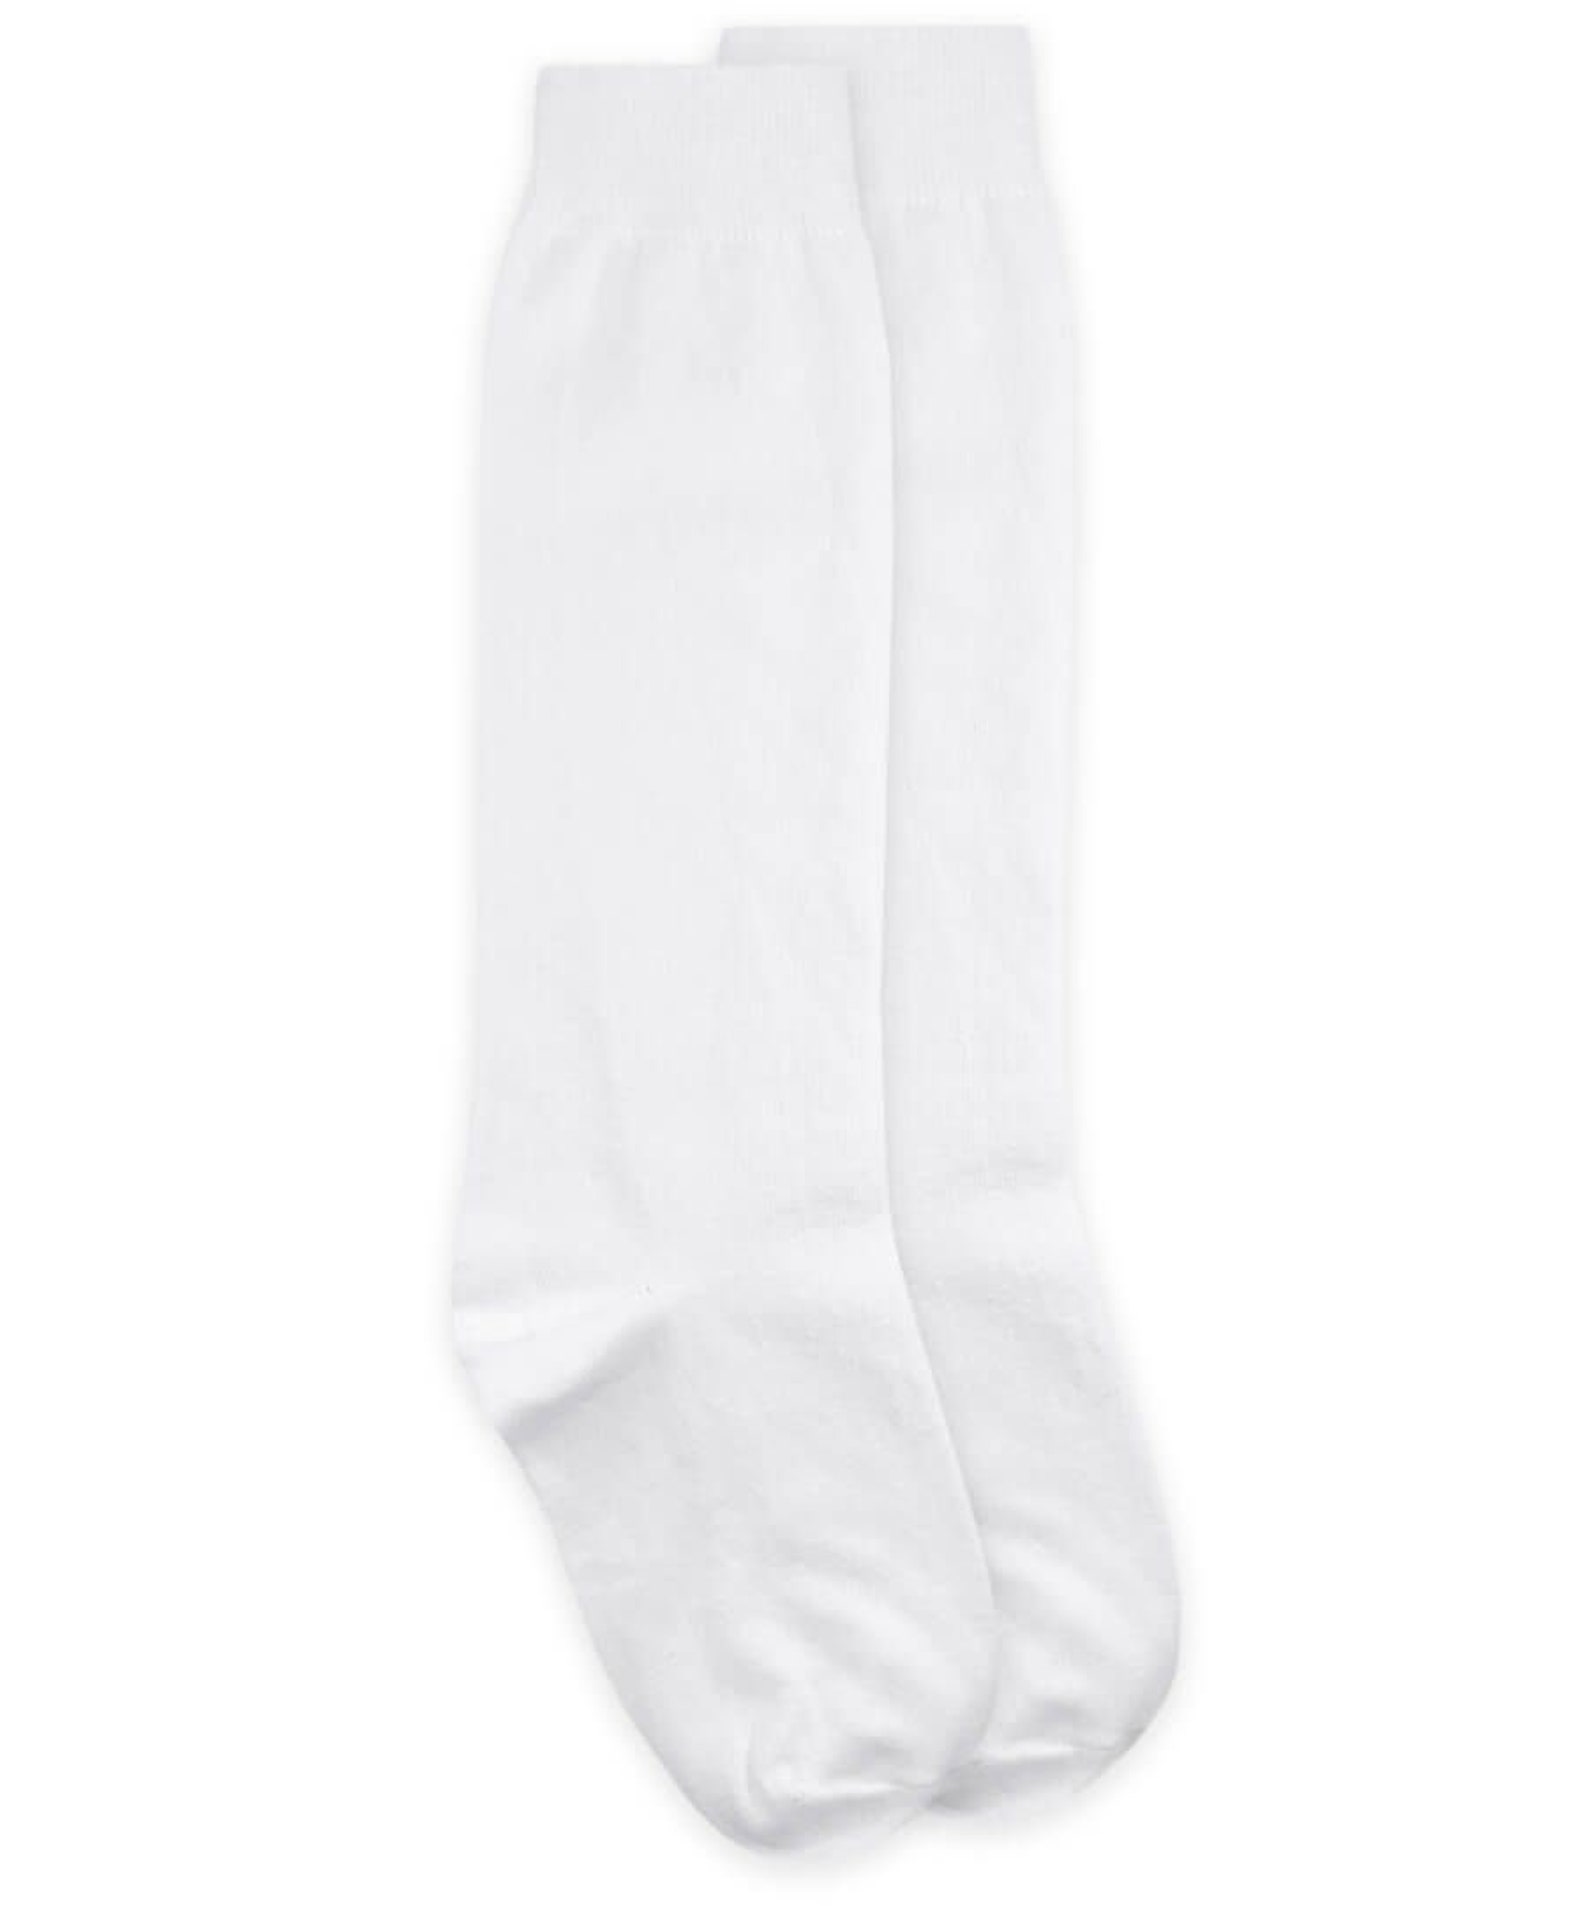 White Uniform Knee Highs School Uniform Socks White Knee | Etsy